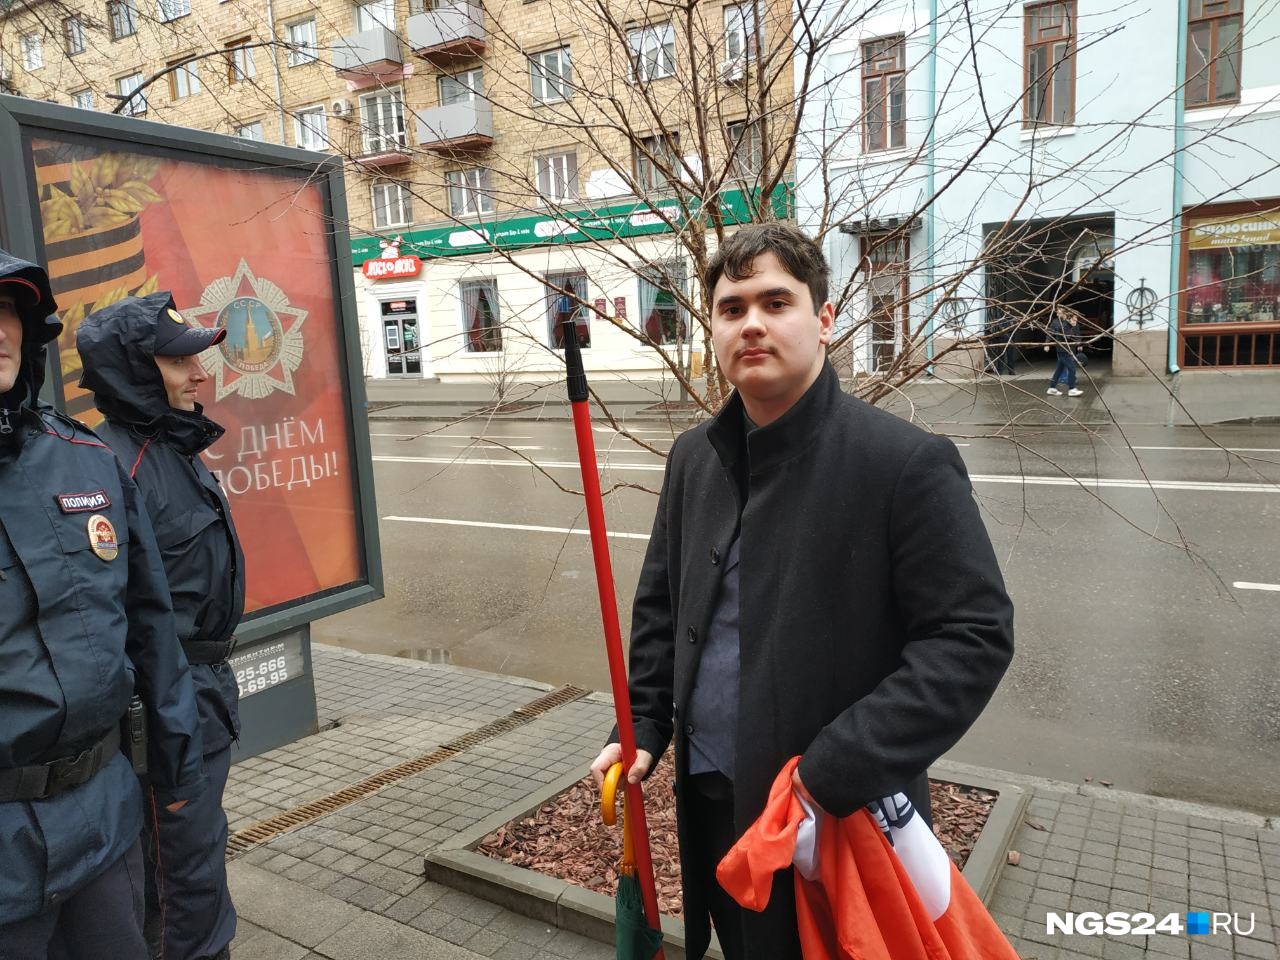 Флаг незарегистрированной партии в руках молодого человека по имени Владислав.  